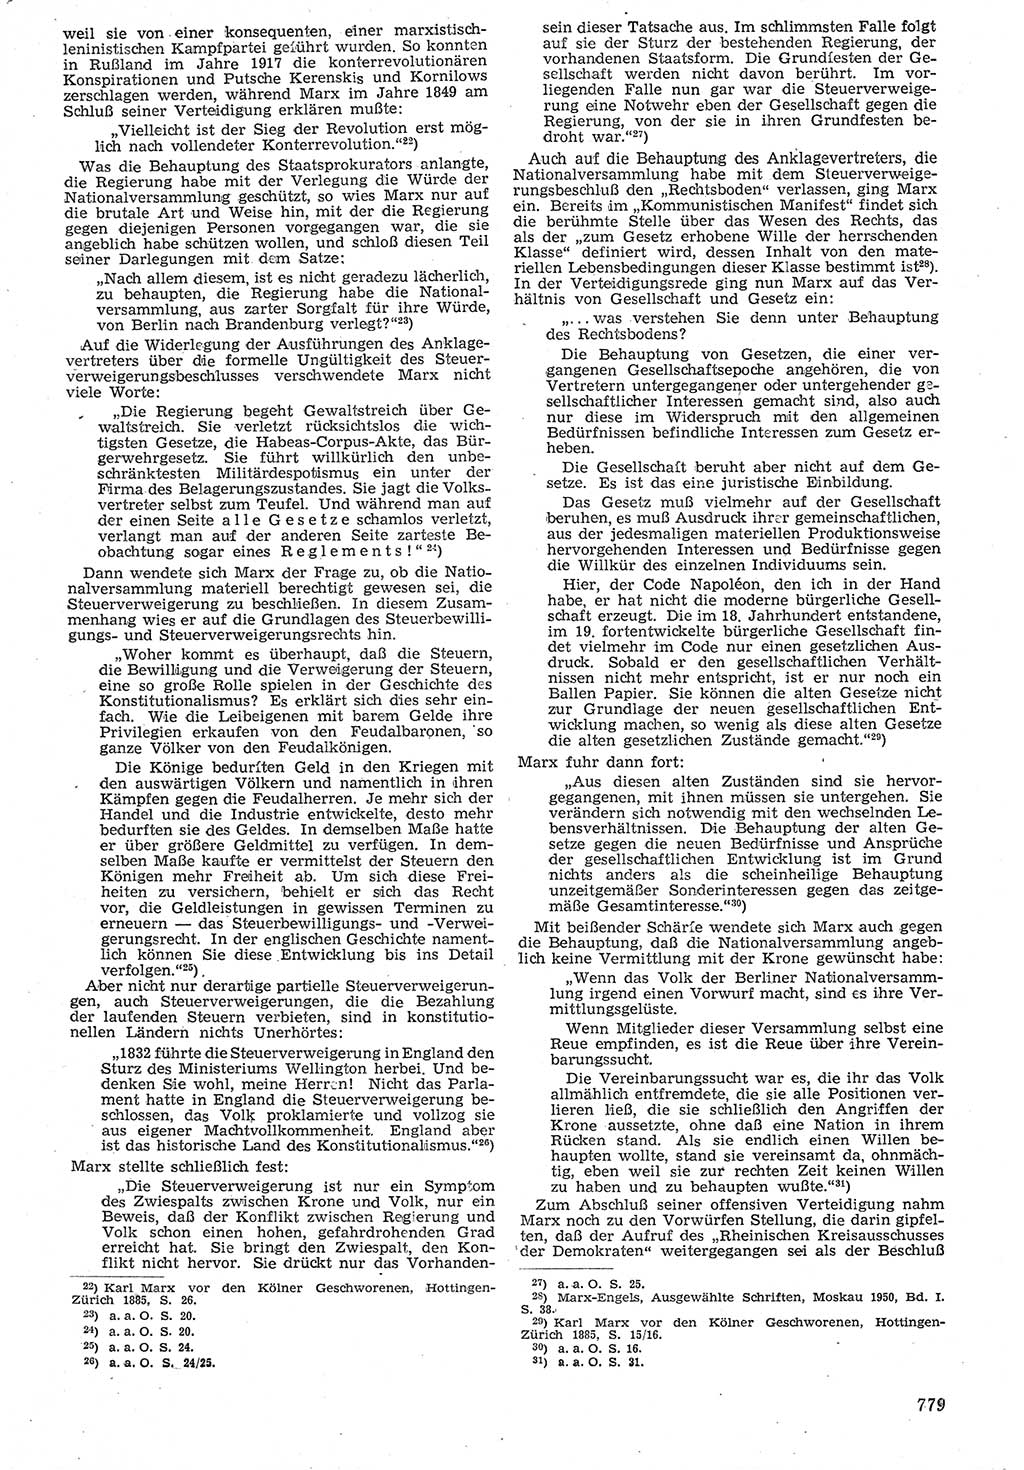 Neue Justiz (NJ), Zeitschrift für Recht und Rechtswissenschaft [Deutsche Demokratische Republik (DDR)], 7. Jahrgang 1953, Seite 779 (NJ DDR 1953, S. 779)